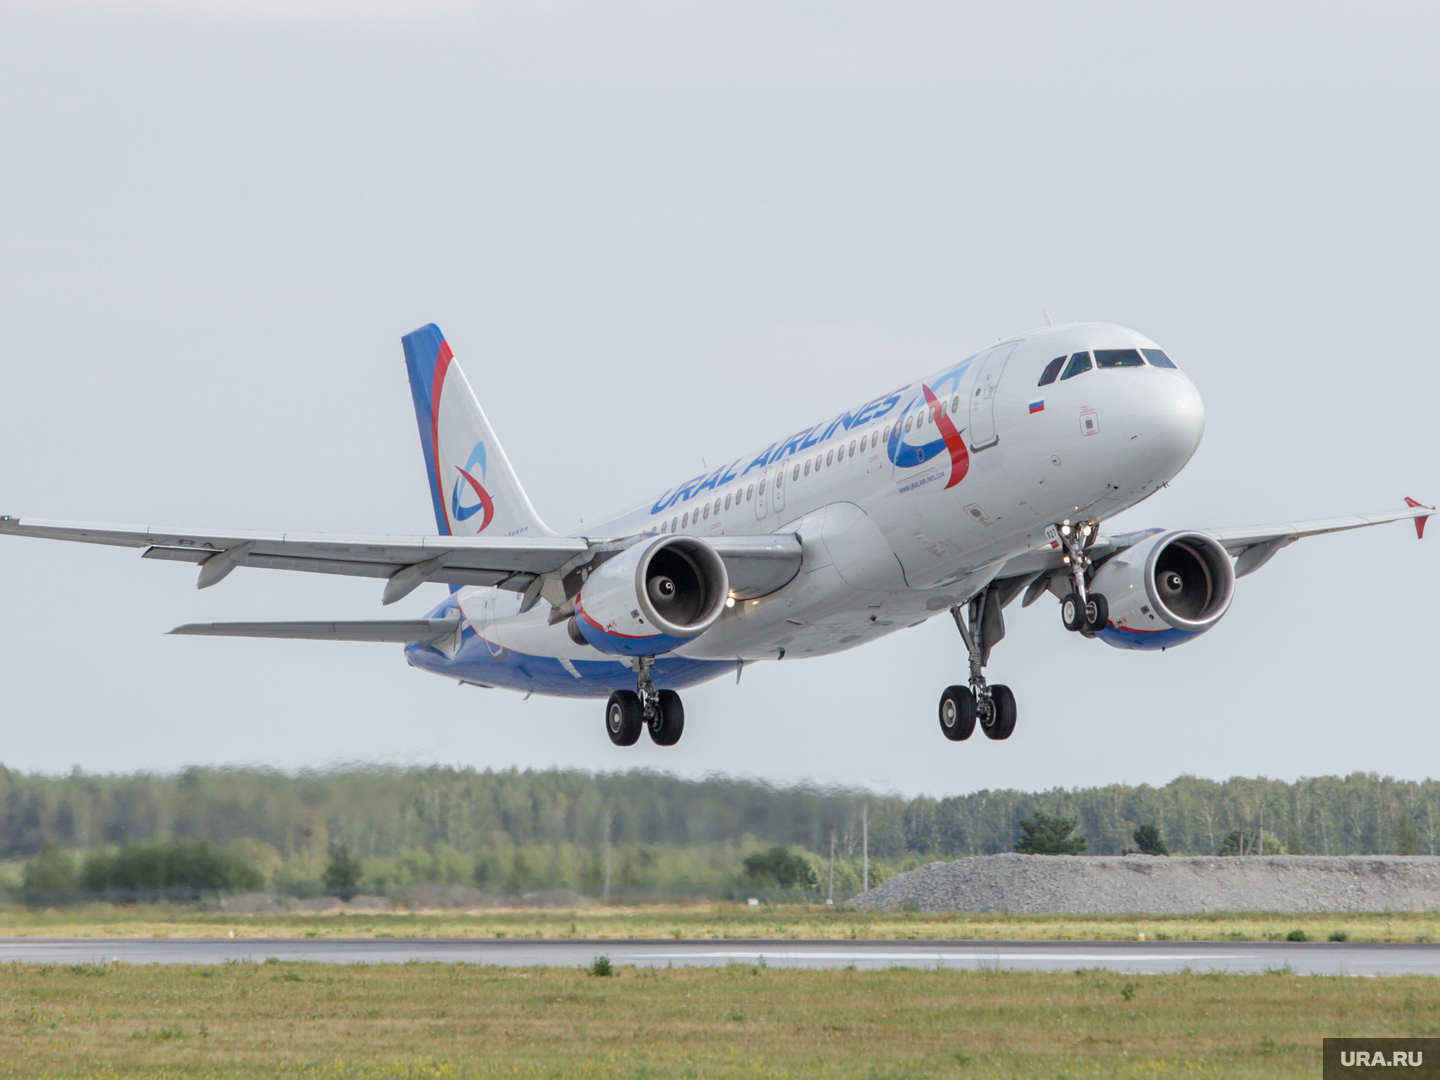 Уральские авиалинии» запустят распродажу билетов за полцены